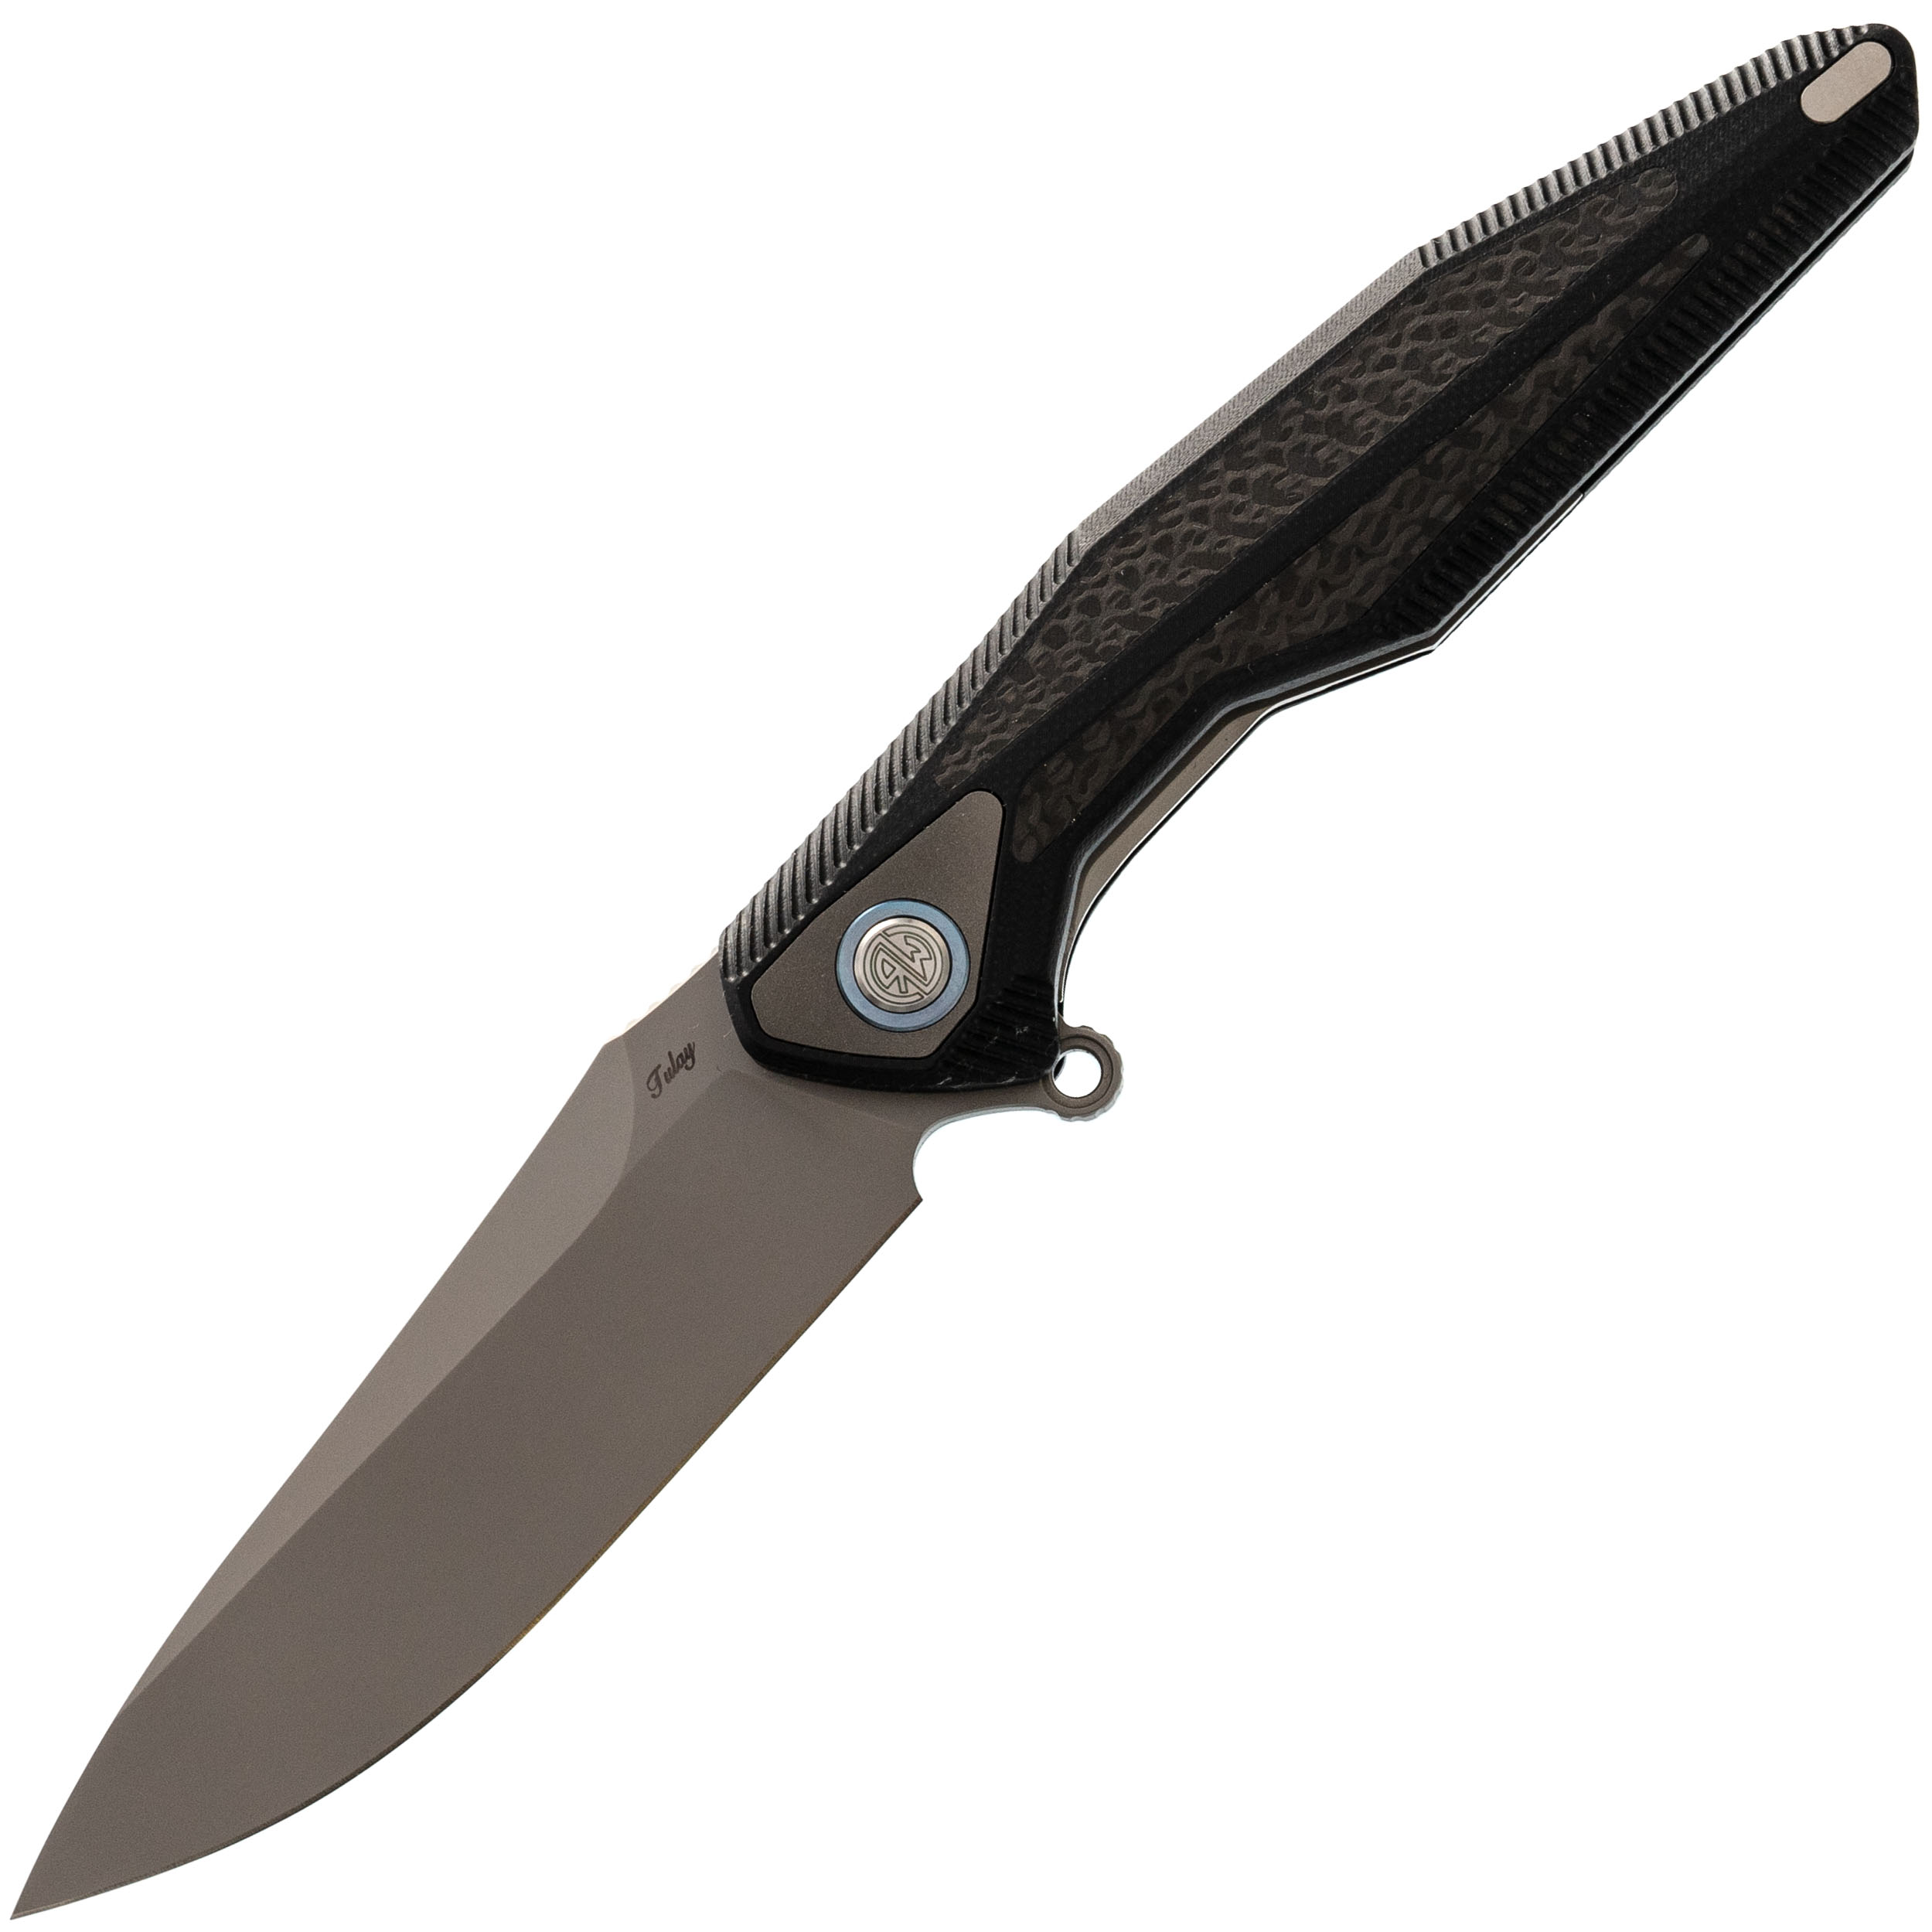 Нож складной Tulay Rikeknife, сталь 154CM, Black G10/Carbon Fiber carbon fiber nickel мареограф